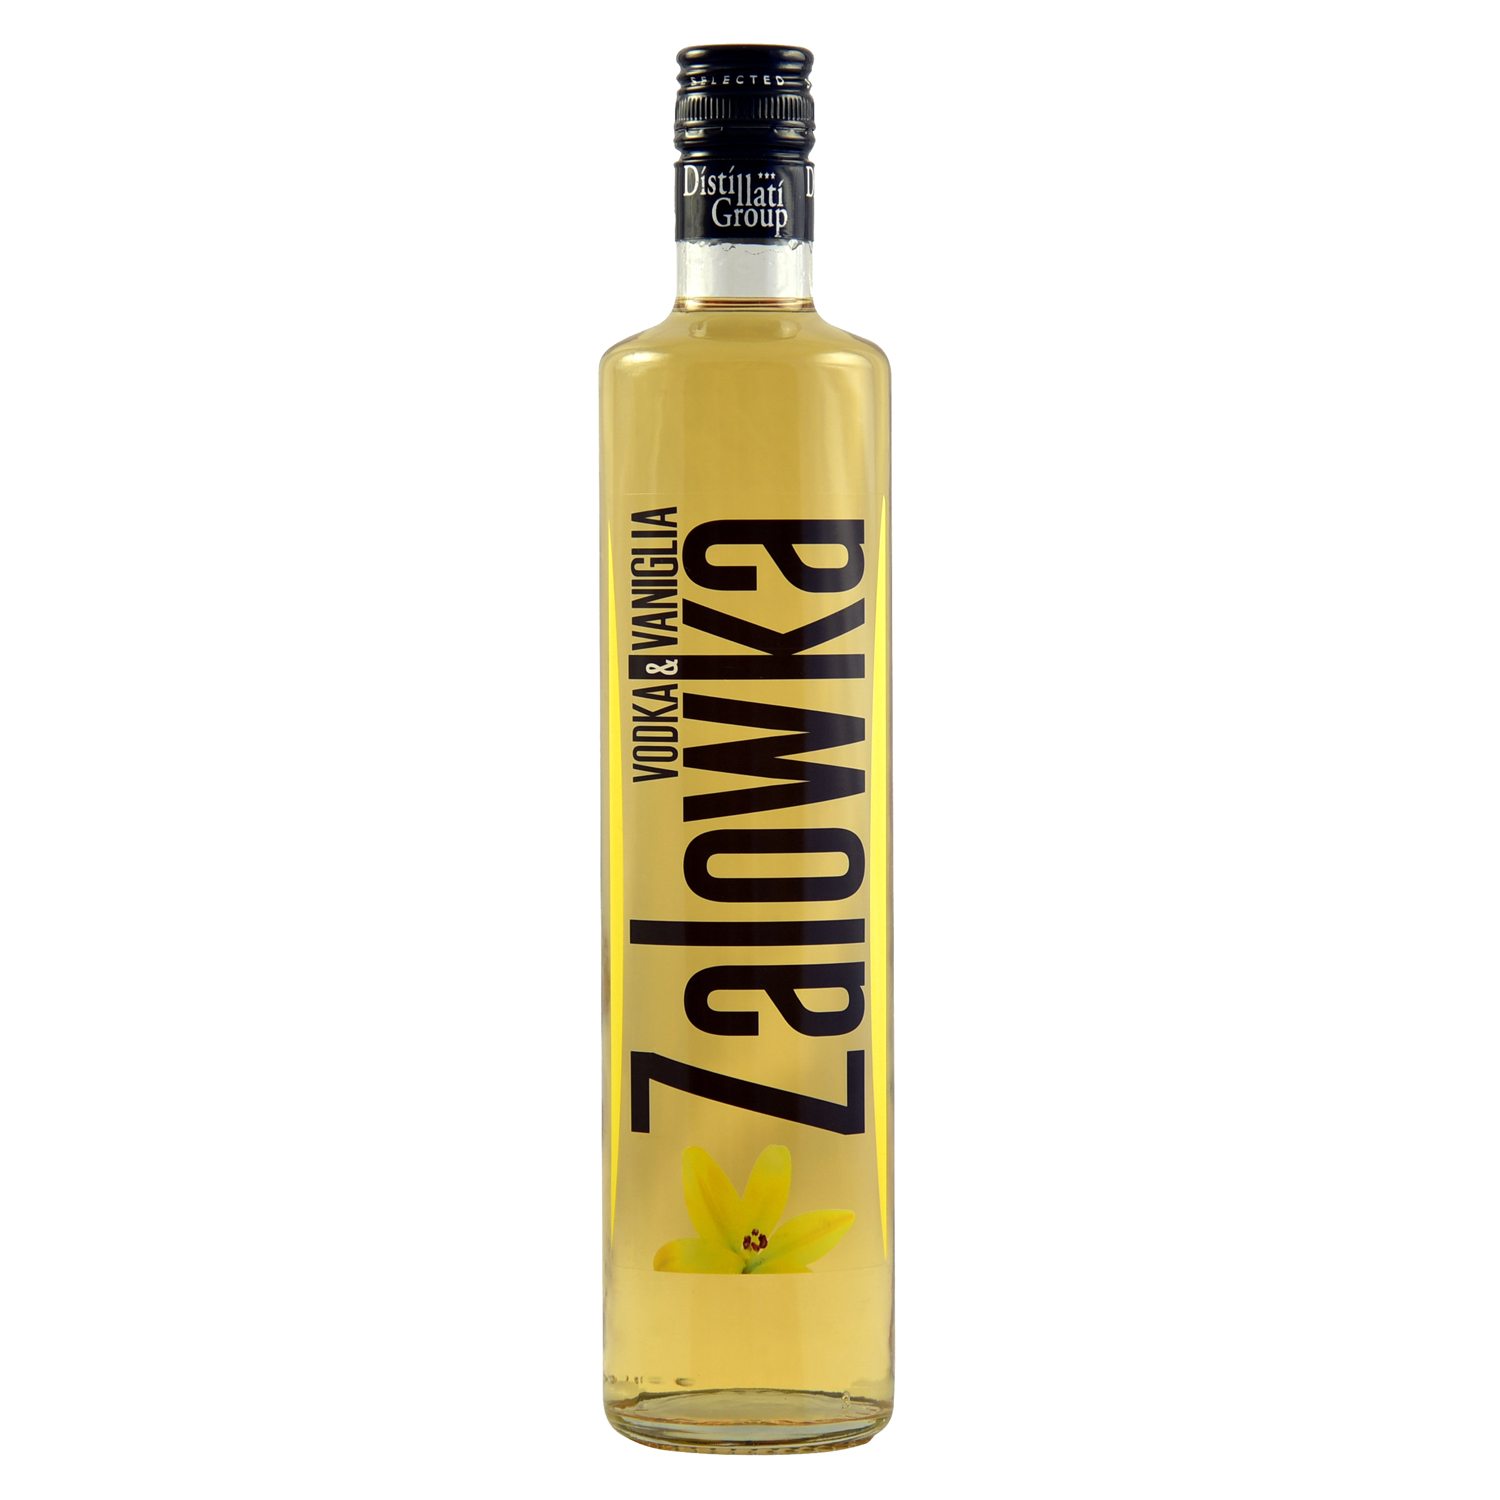 ZALOWKA Vodka & Vanille, 21% Vol. 0,7 ltr. Vaniglia Likör mit Wodka